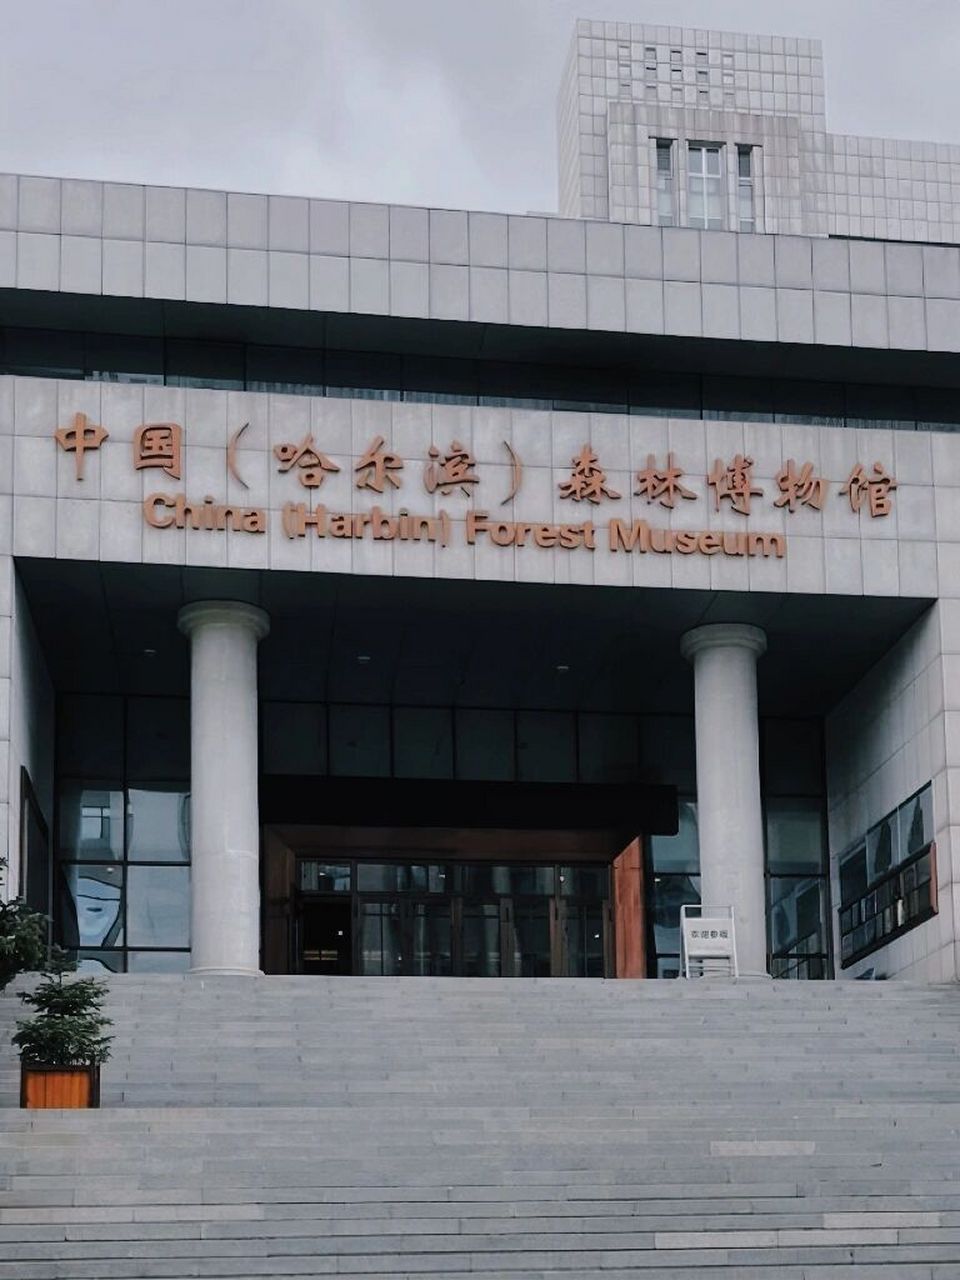 中国哈尔滨森林博物馆图片